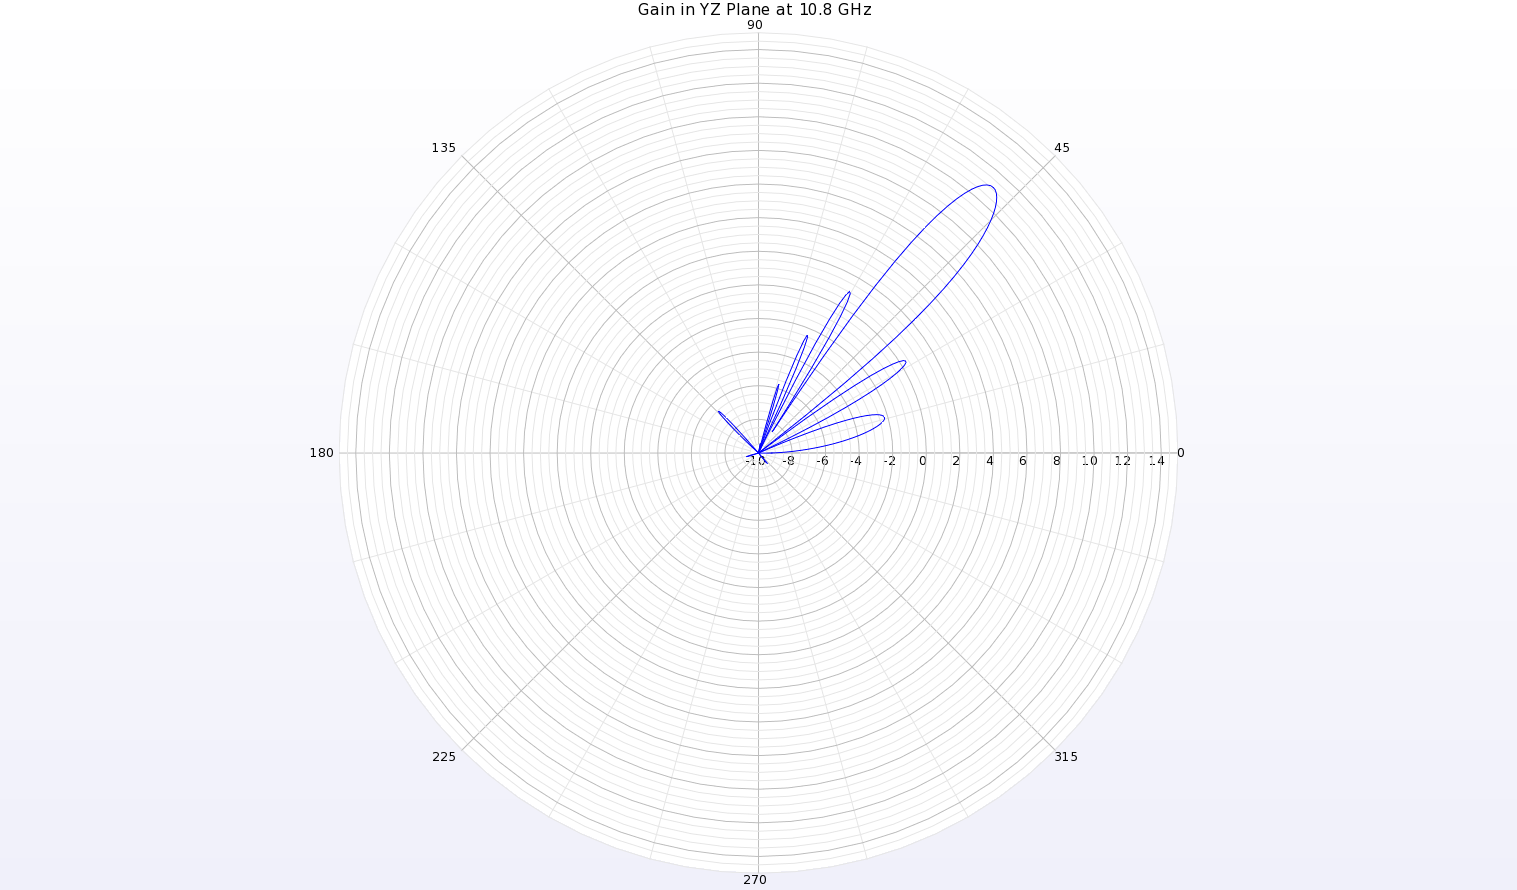 图 10：天线 YZ 平面 10.8 千兆赫处的增益模式极坐标图显示，θ=49 度处的波束峰值增益为 11.1 dBi。